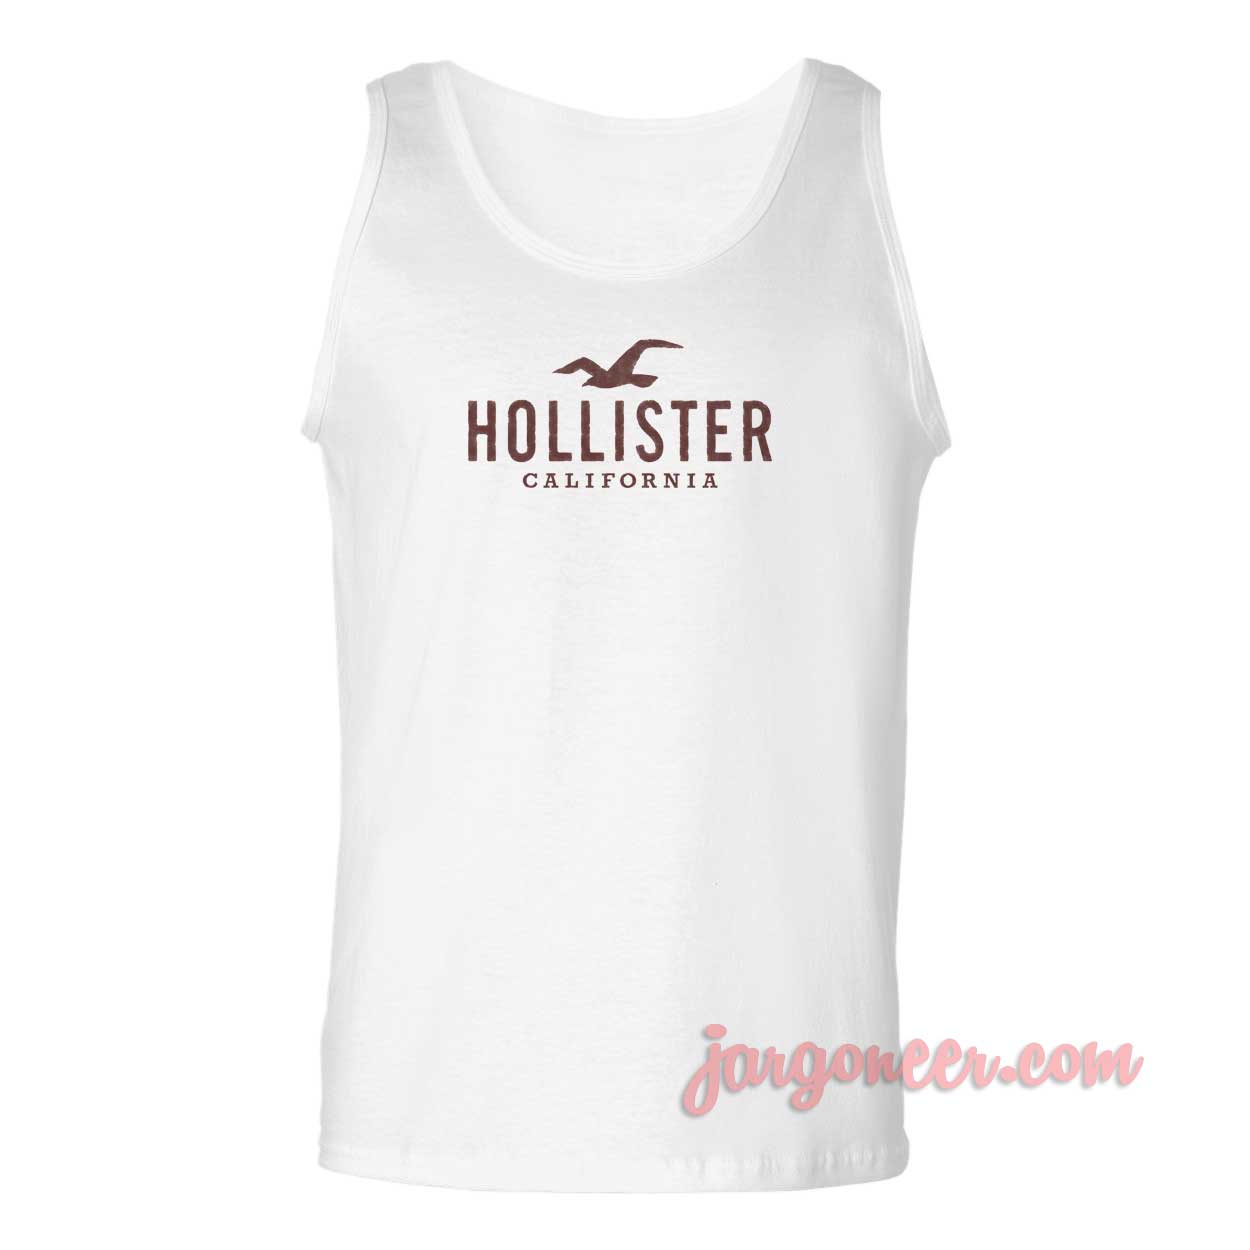 Hollister California - Shop Unique Graphic Cool Shirt Designs